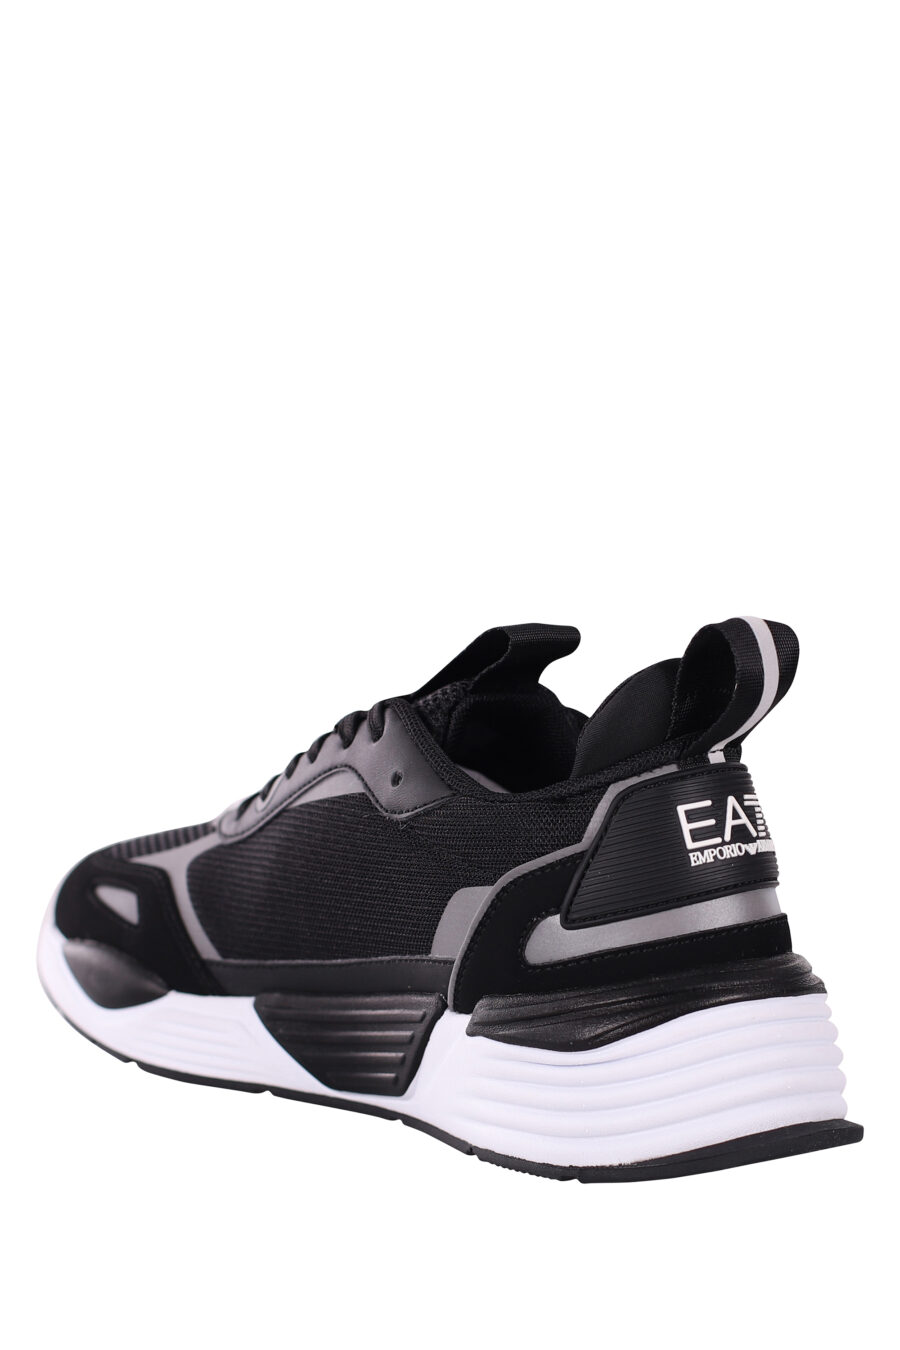 Zapatillas negras y plateado "ace runner" con logo de aguila - IMG 5800